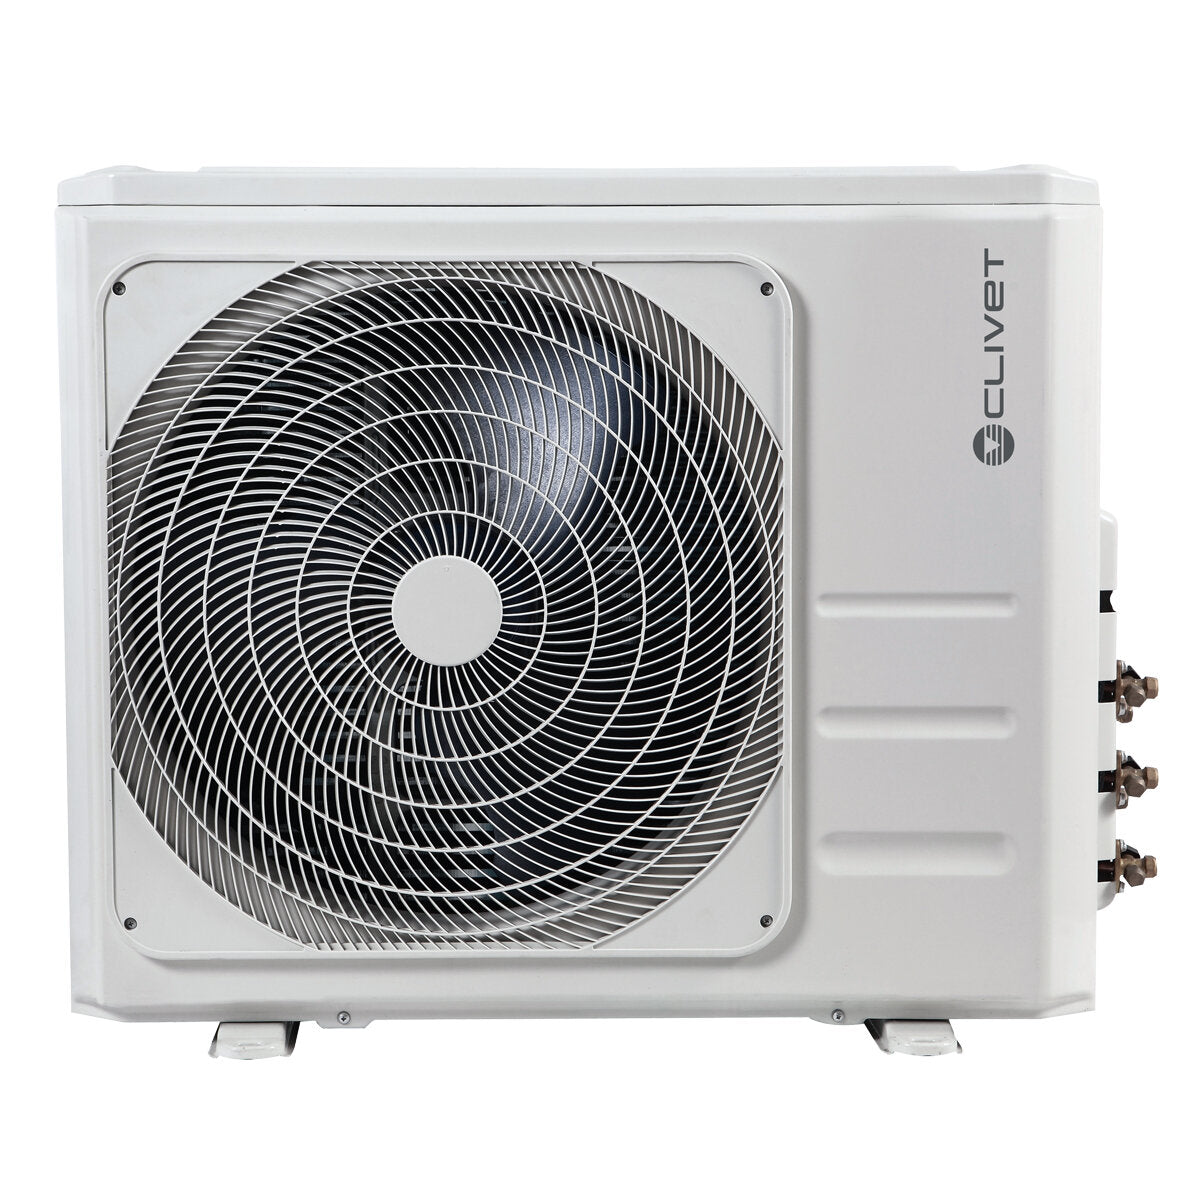 Clivet Essential 2 climatiseur penta split 7000 + 9000 + 9000 + 9000 + 18000 BTU inverter A++ unité extérieure 12,3 kW